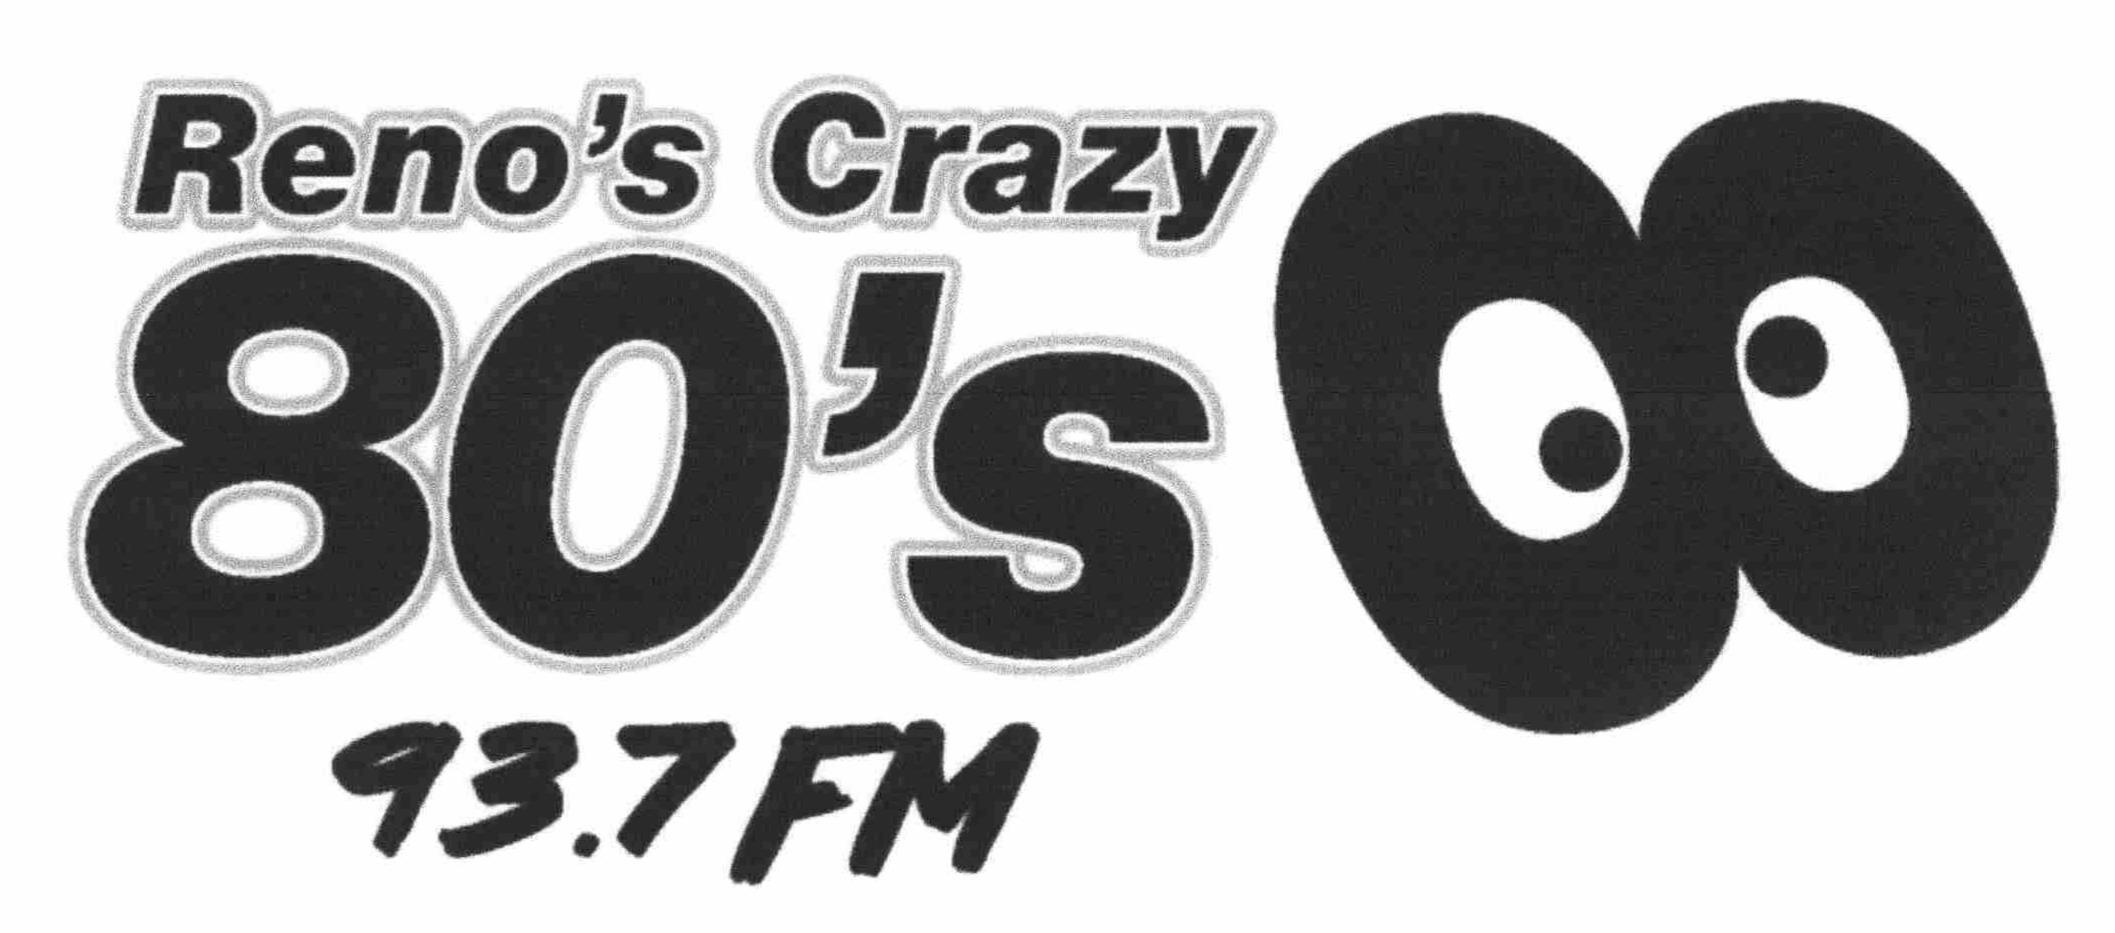  RENO'S CRAZY 80'S 93.7 FM